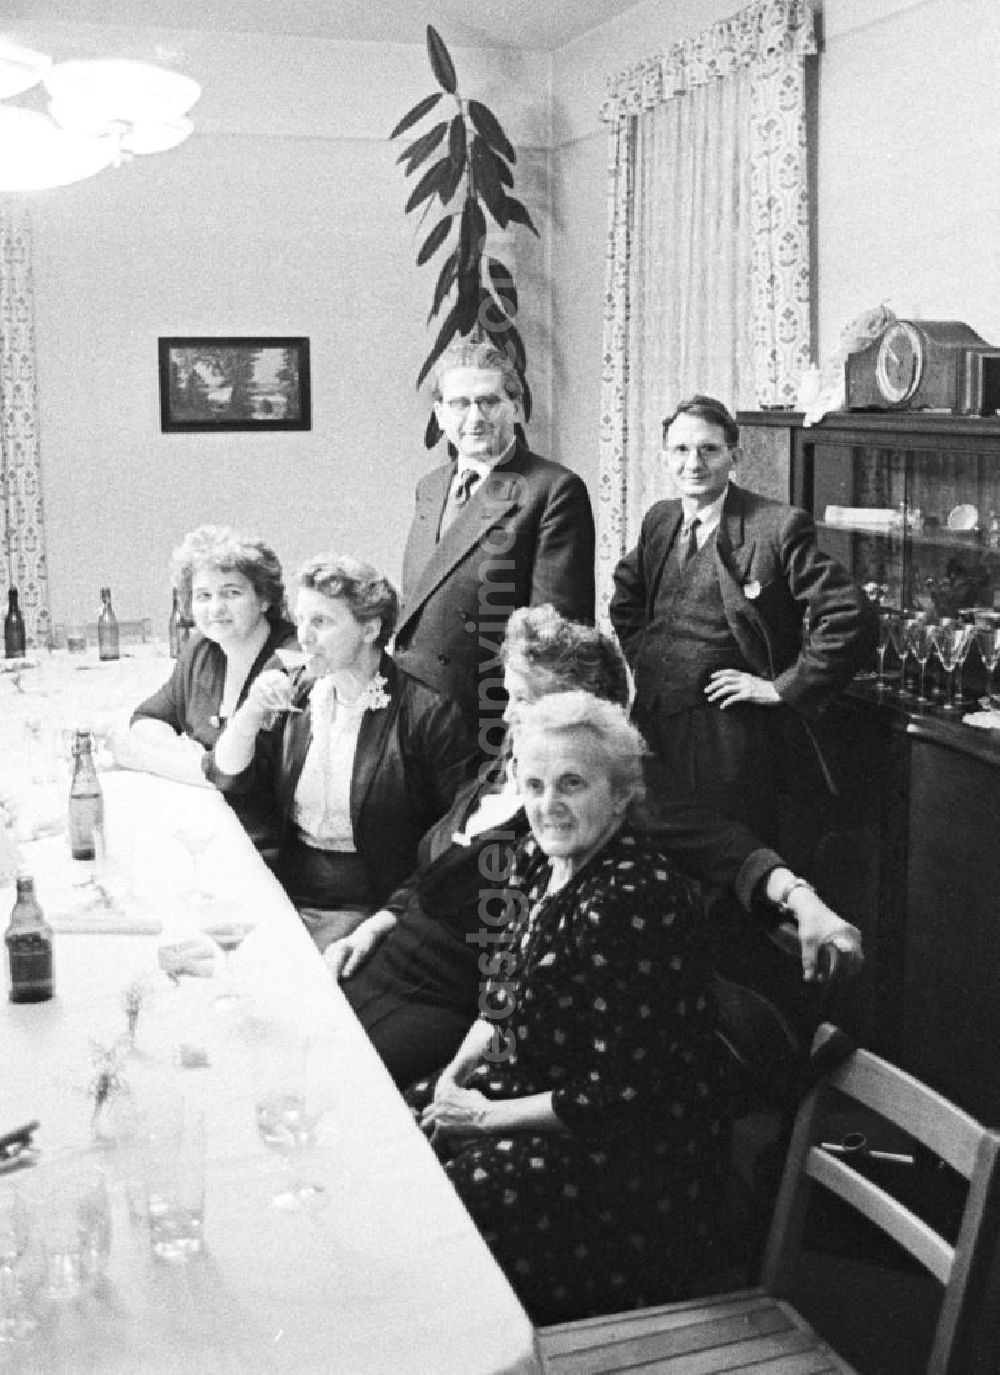 GDR picture archive: Leipzig - Auf einer Familienfeier, drei Frauen und eine ältere Frau an einem Tisch mit Gläsern und Getränken. Stehend, zwei Männer vor einer Anrichte. Bestmögliche Qualität nach Vorlage!